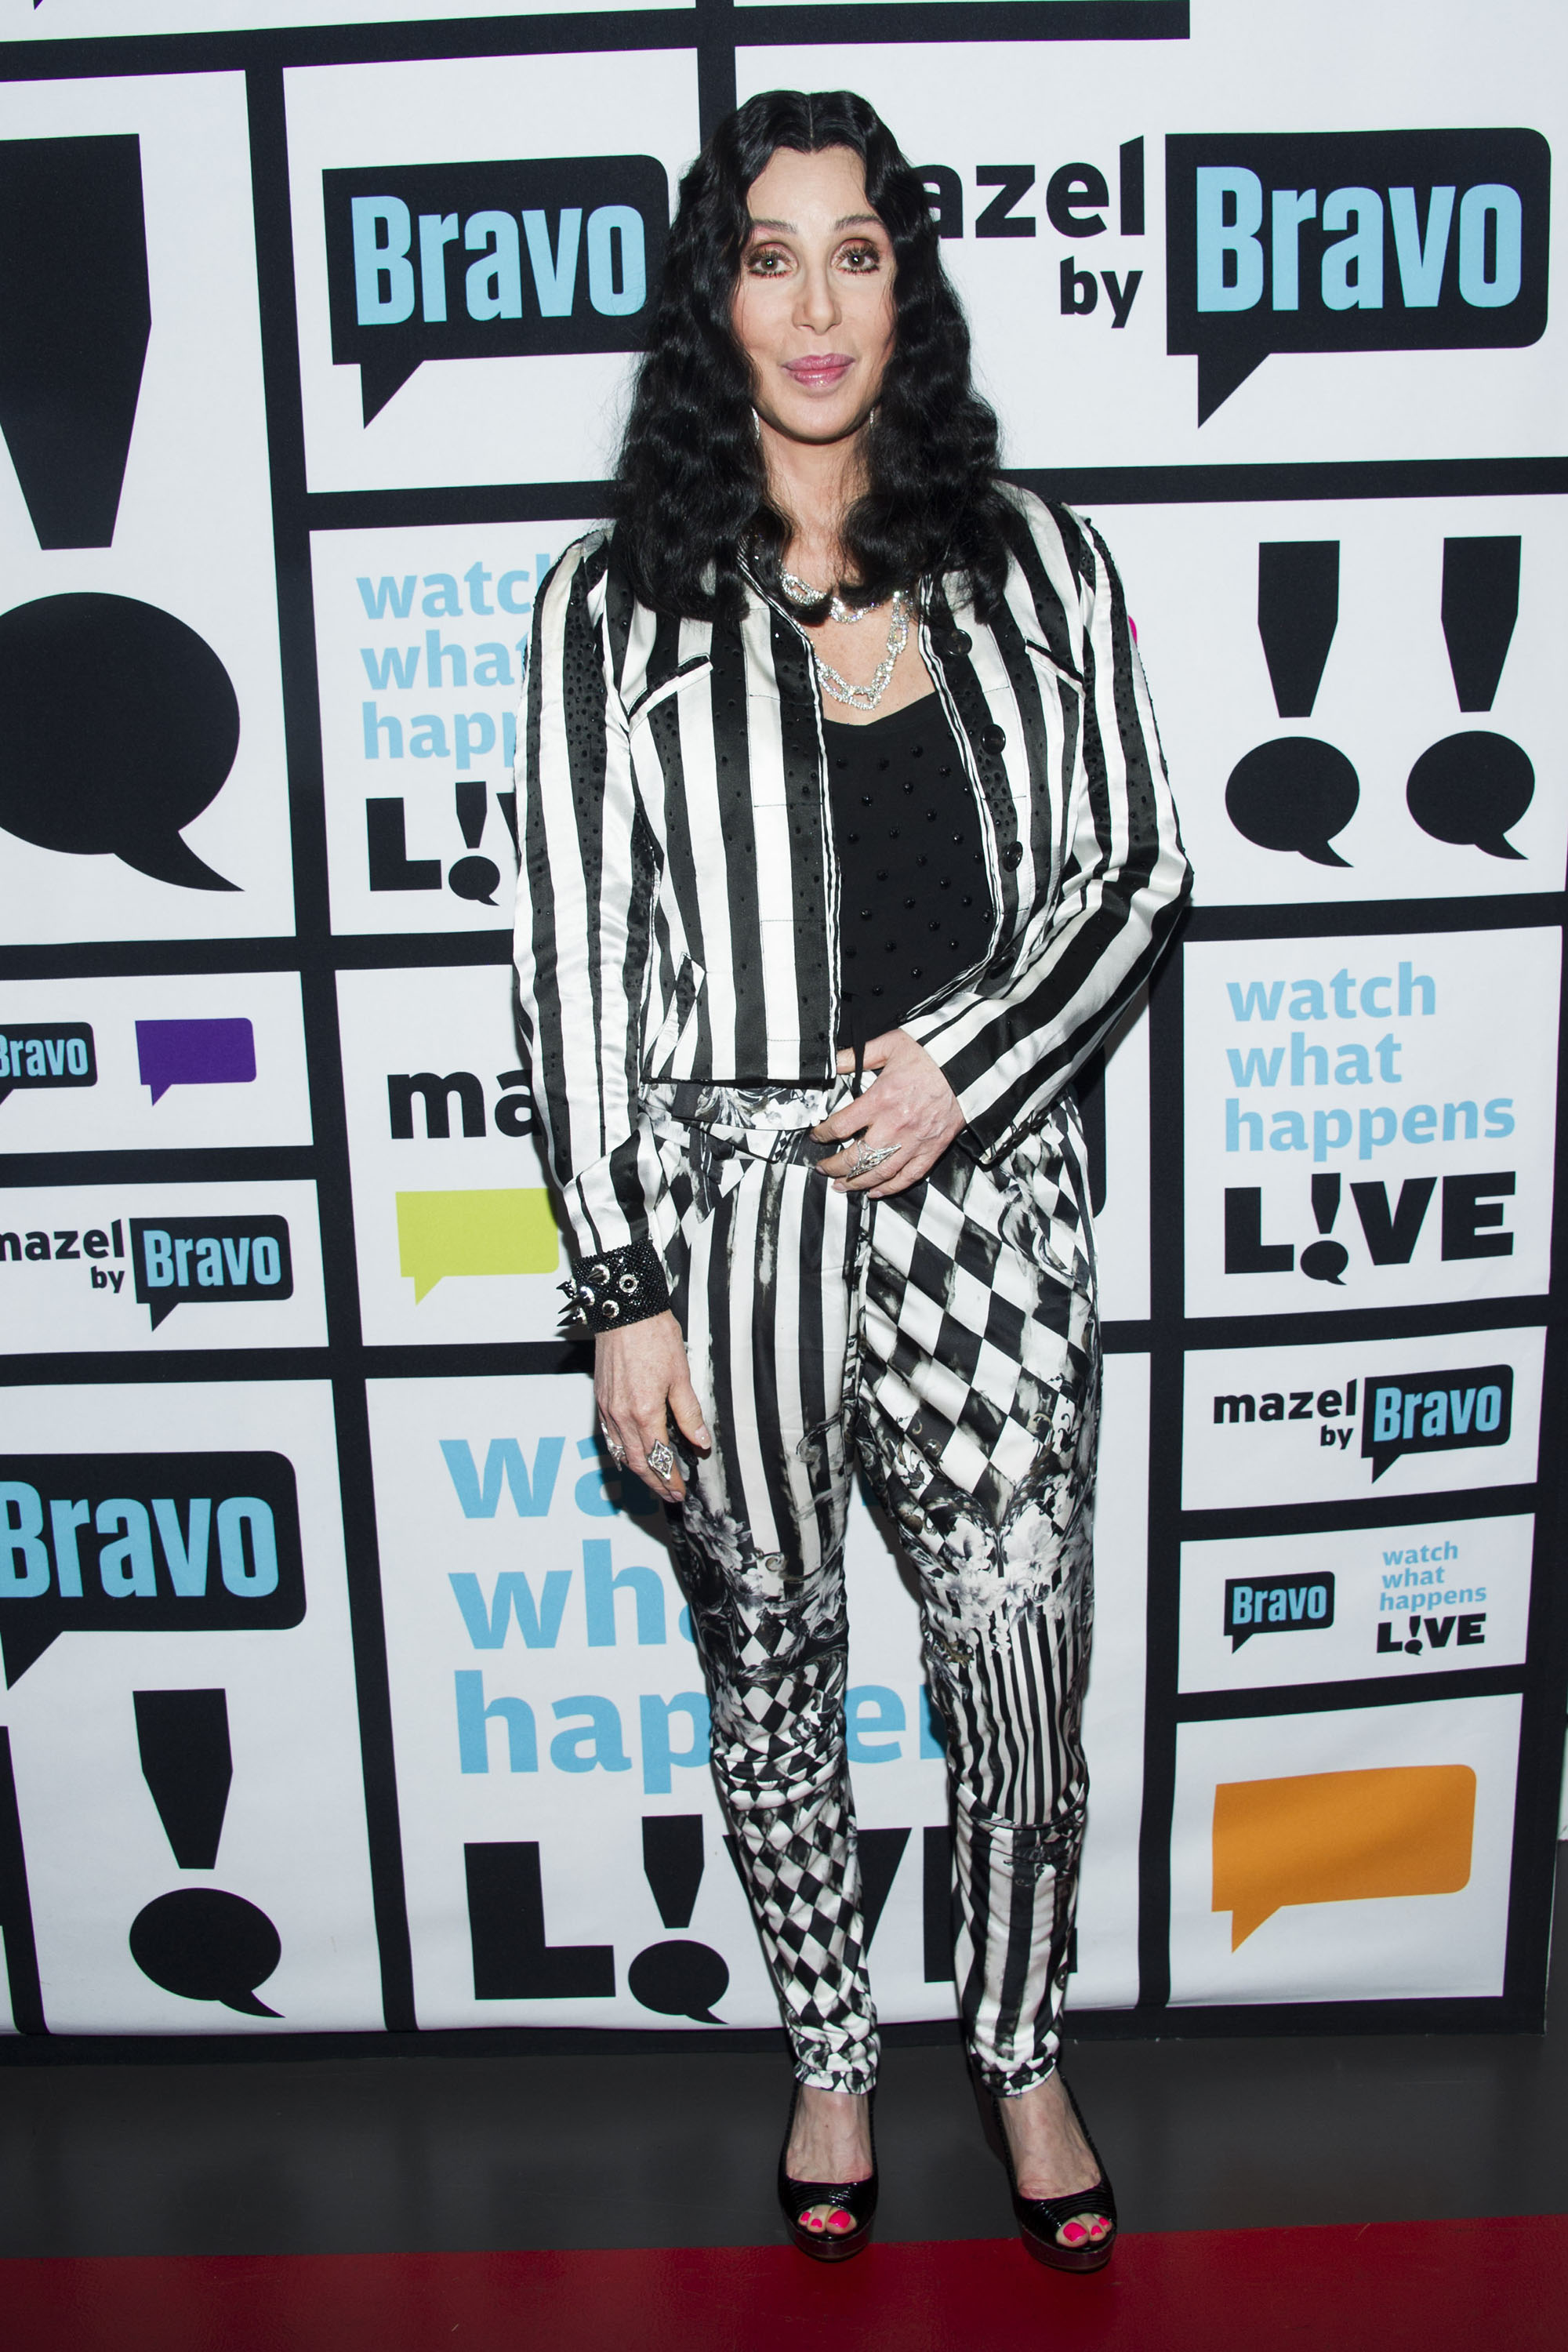 Cher in New York City on June 27, 2013.